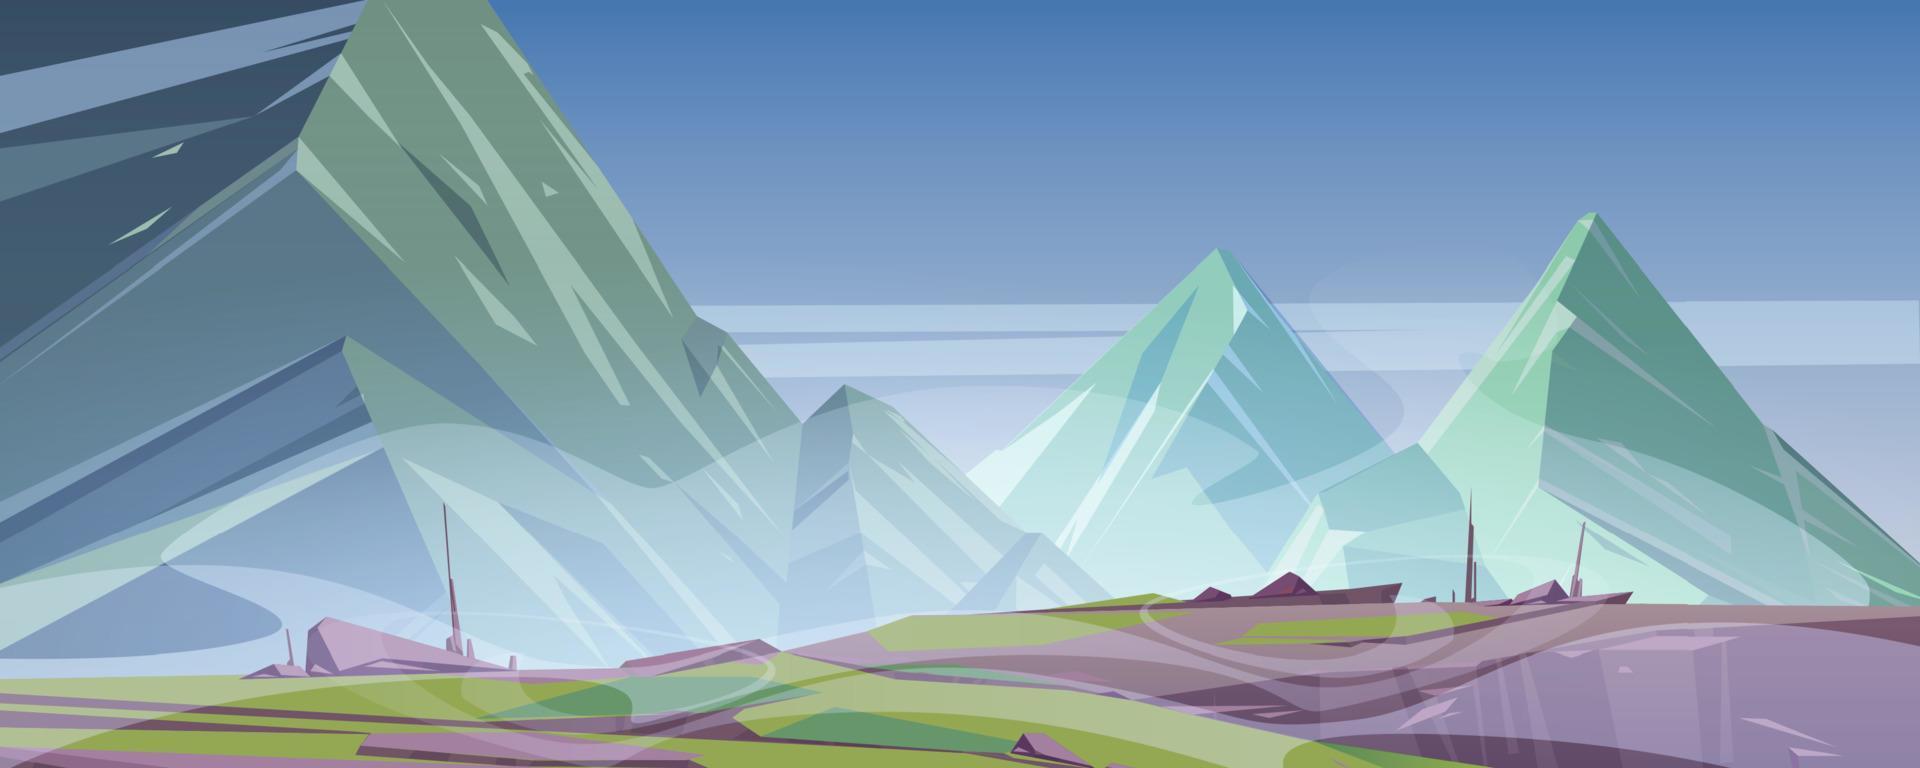 paisaje de montaña con niebla cubre picos rocosos vector